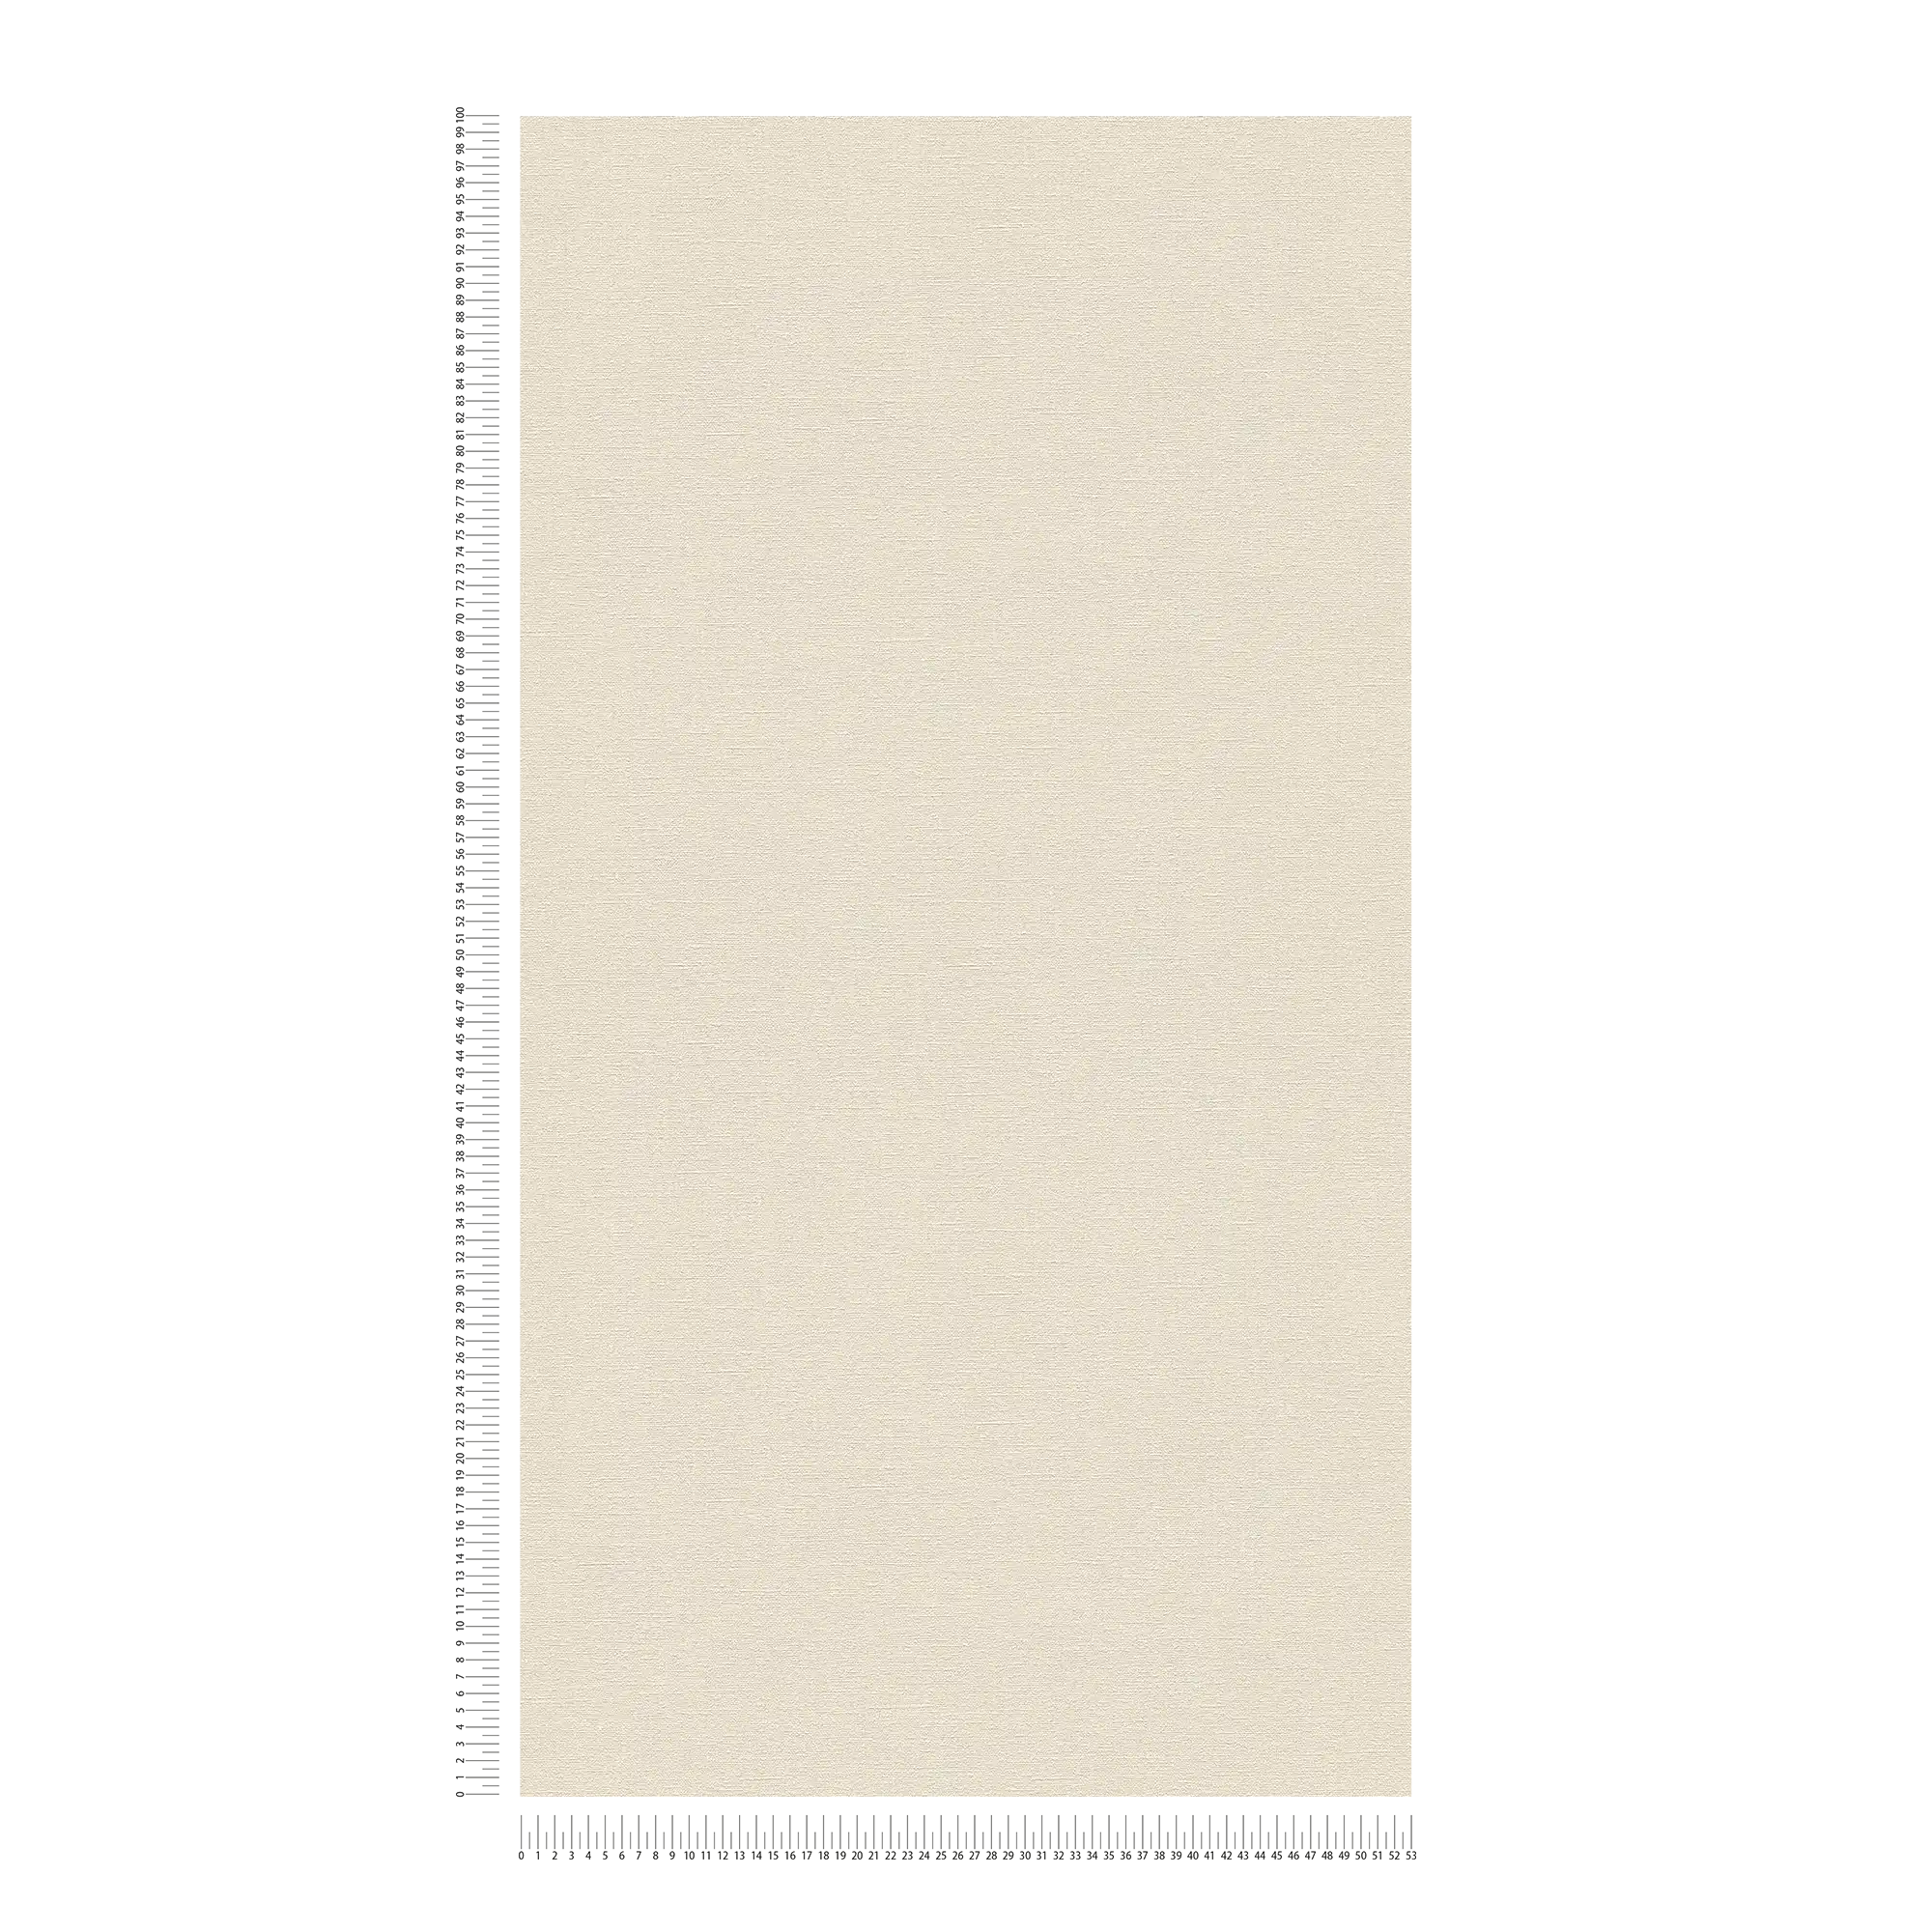             Papier peint beige uni & mat avec motifs structurés
        